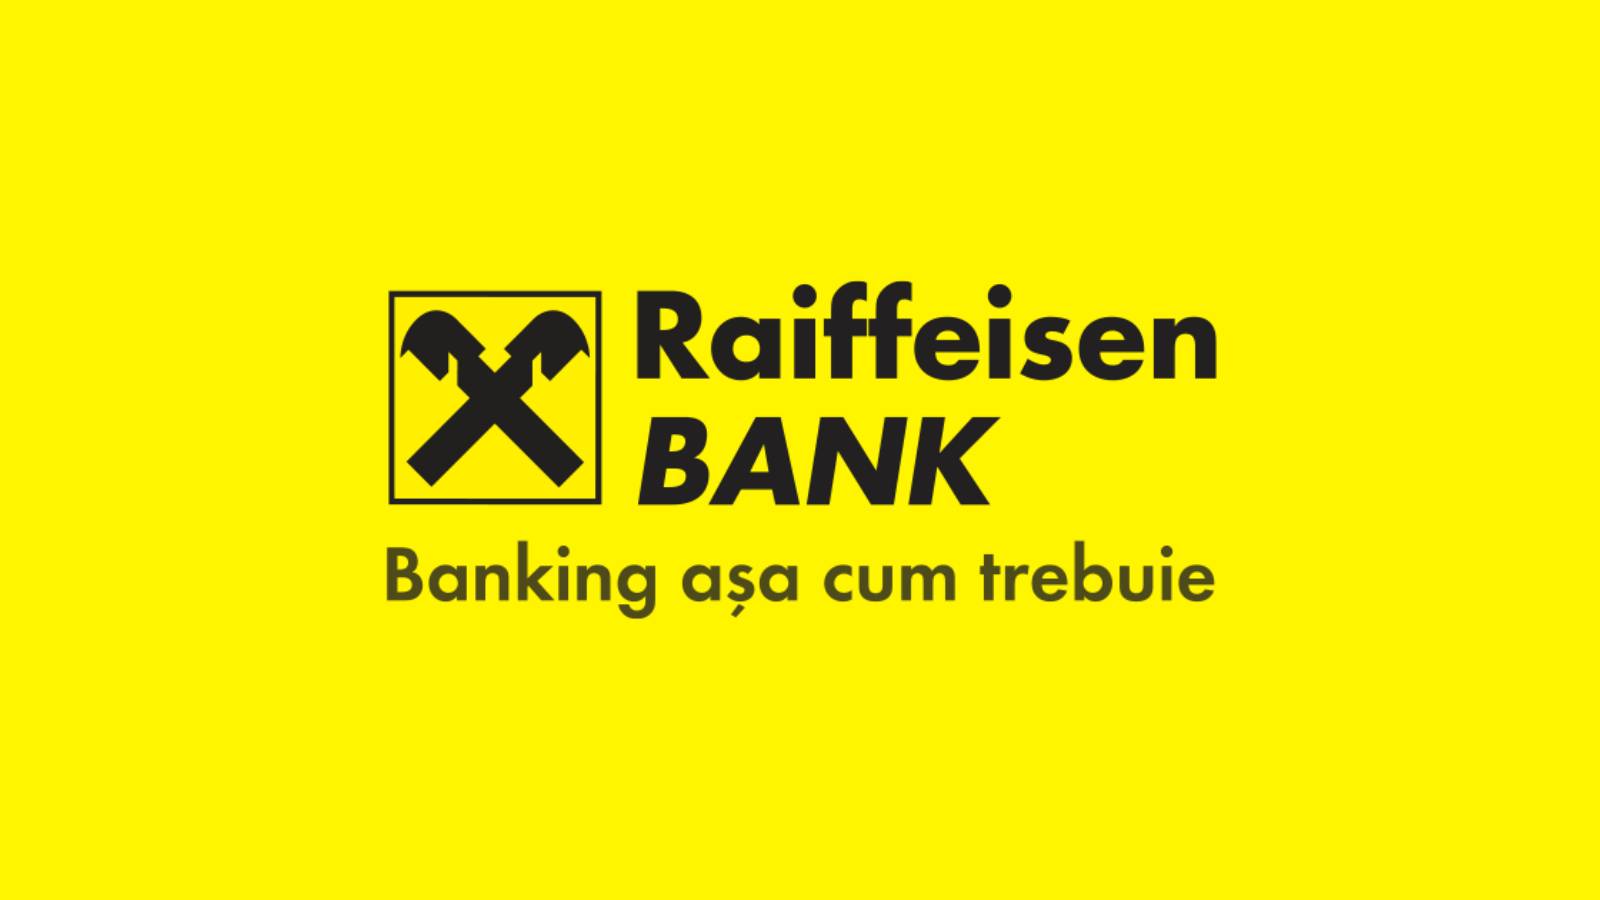 Decisión oficial del Banco Raiffeisen GRATIS hacer que el verano sea más hermoso